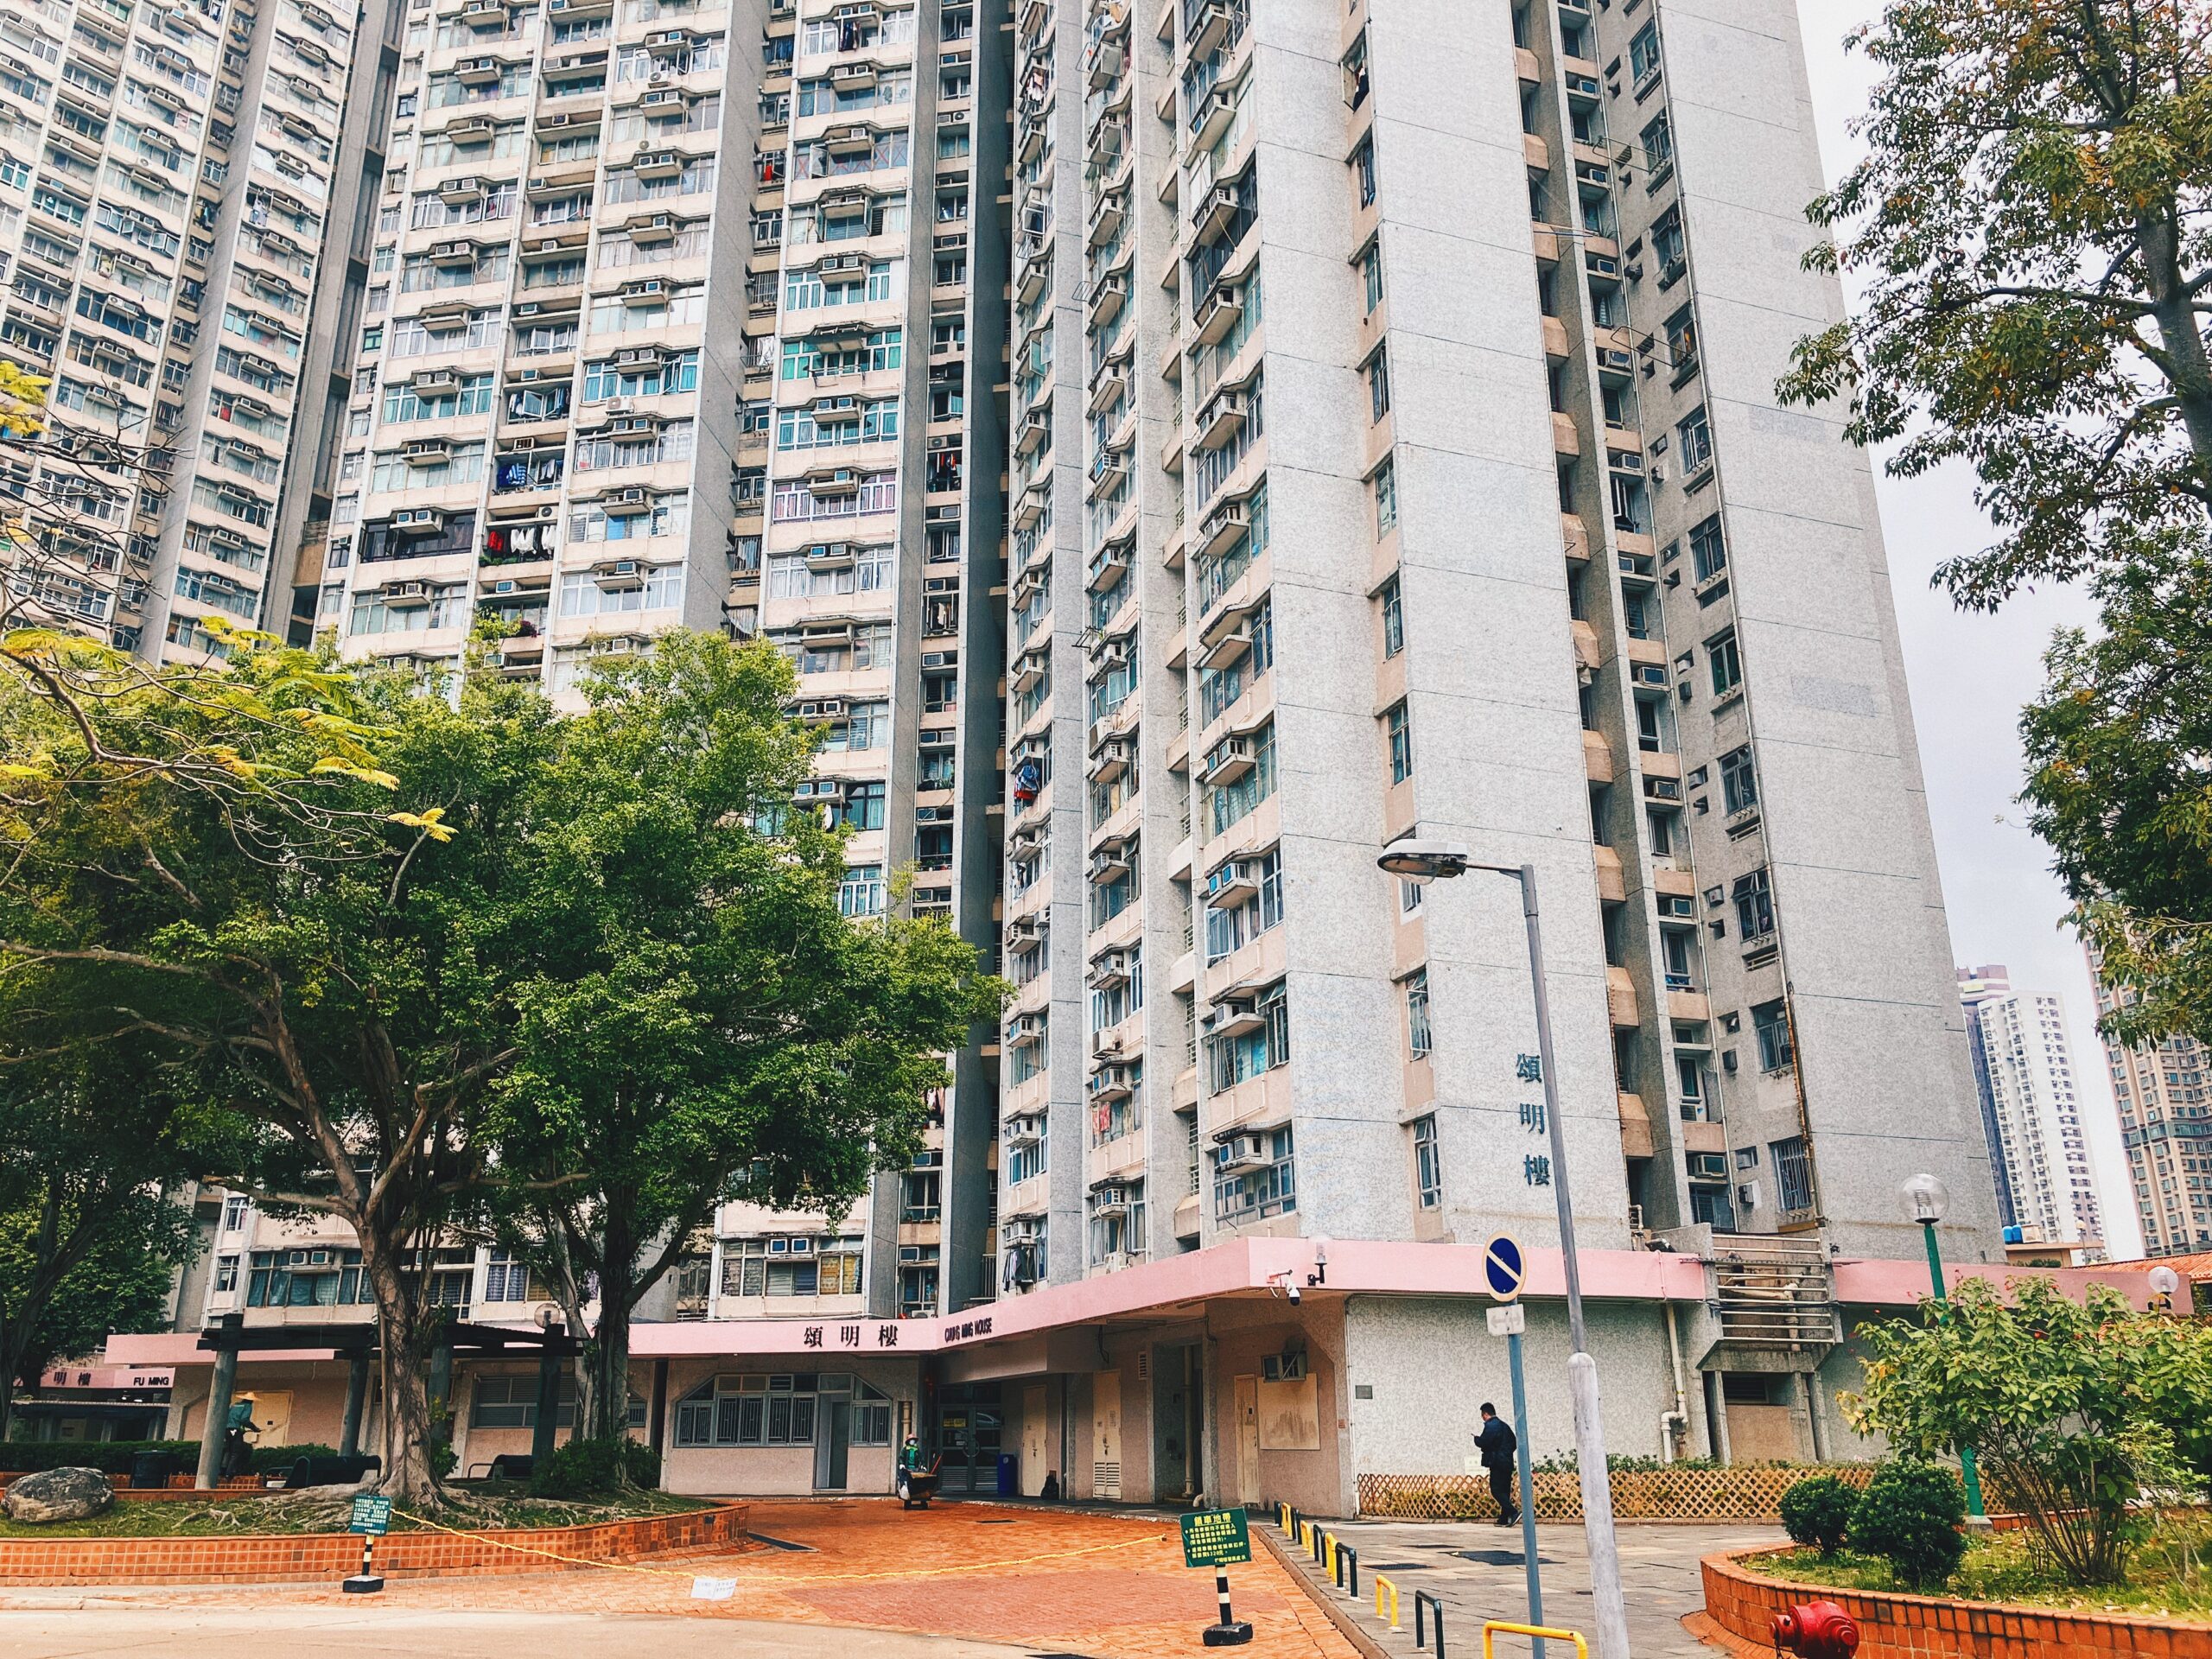 【香港公屋】粉嶺華明邨 從傳統到現代的屋邨風情